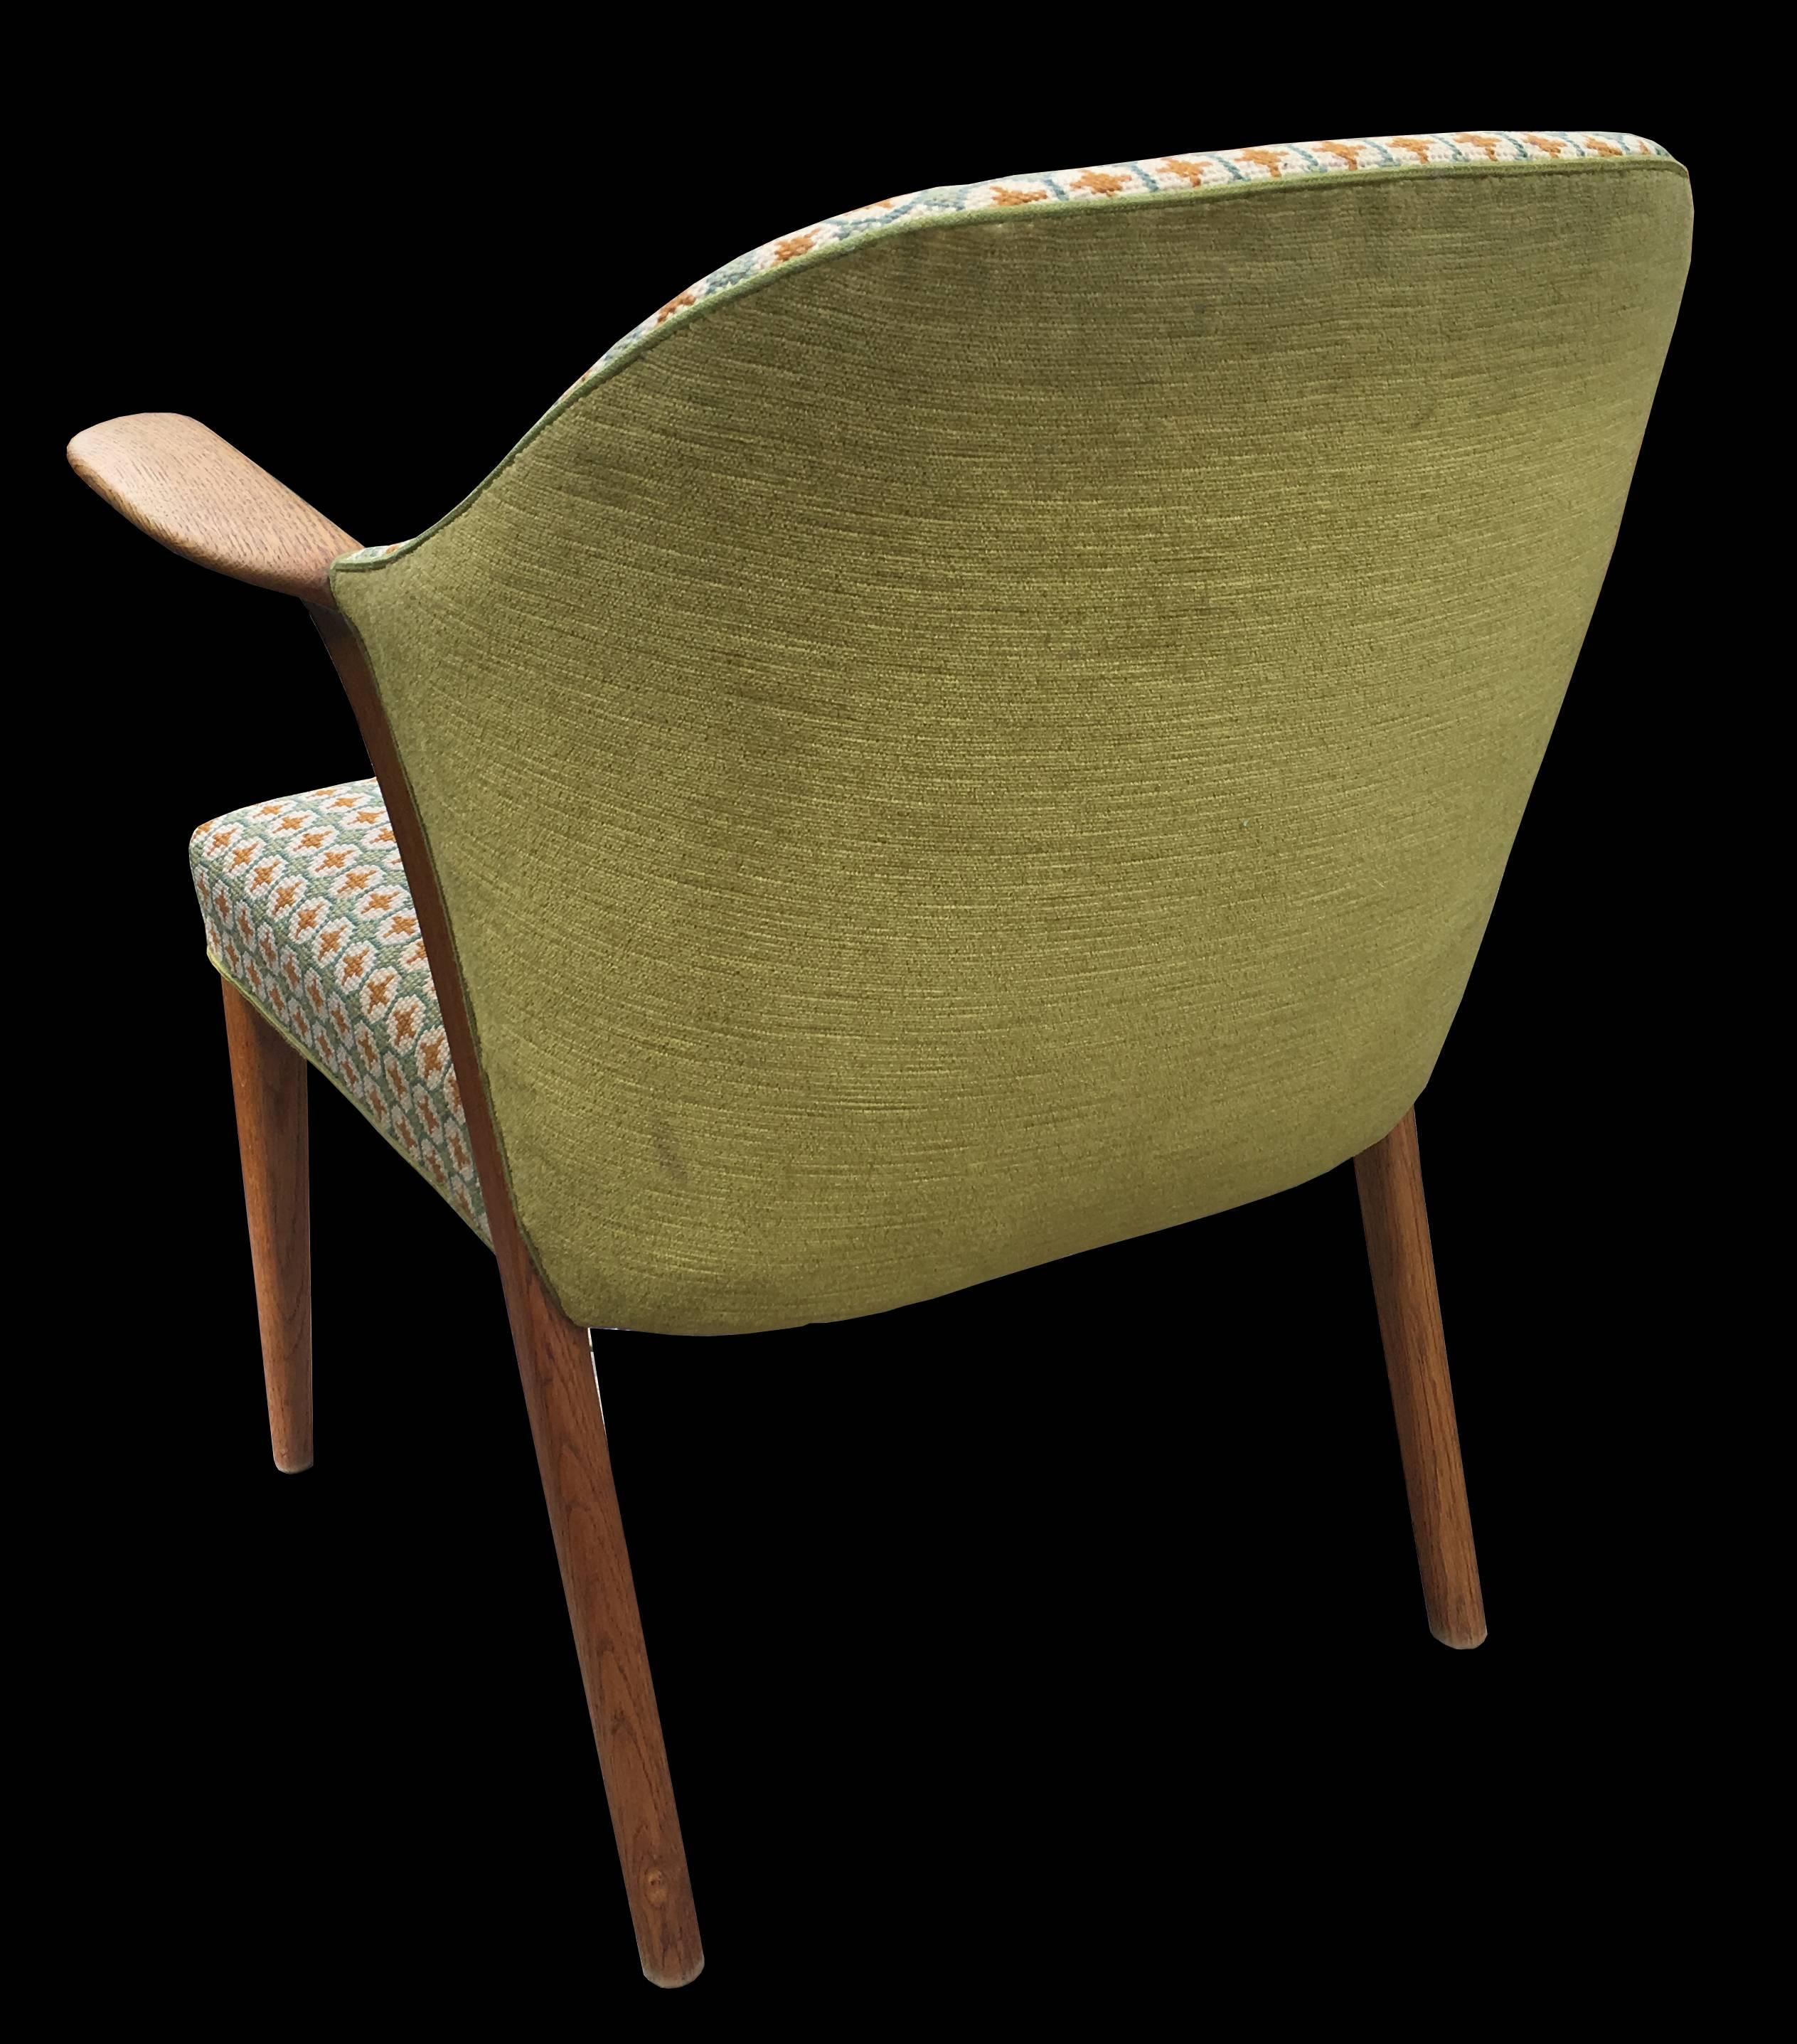 A super cool original oak scandy modern chair in original condition.